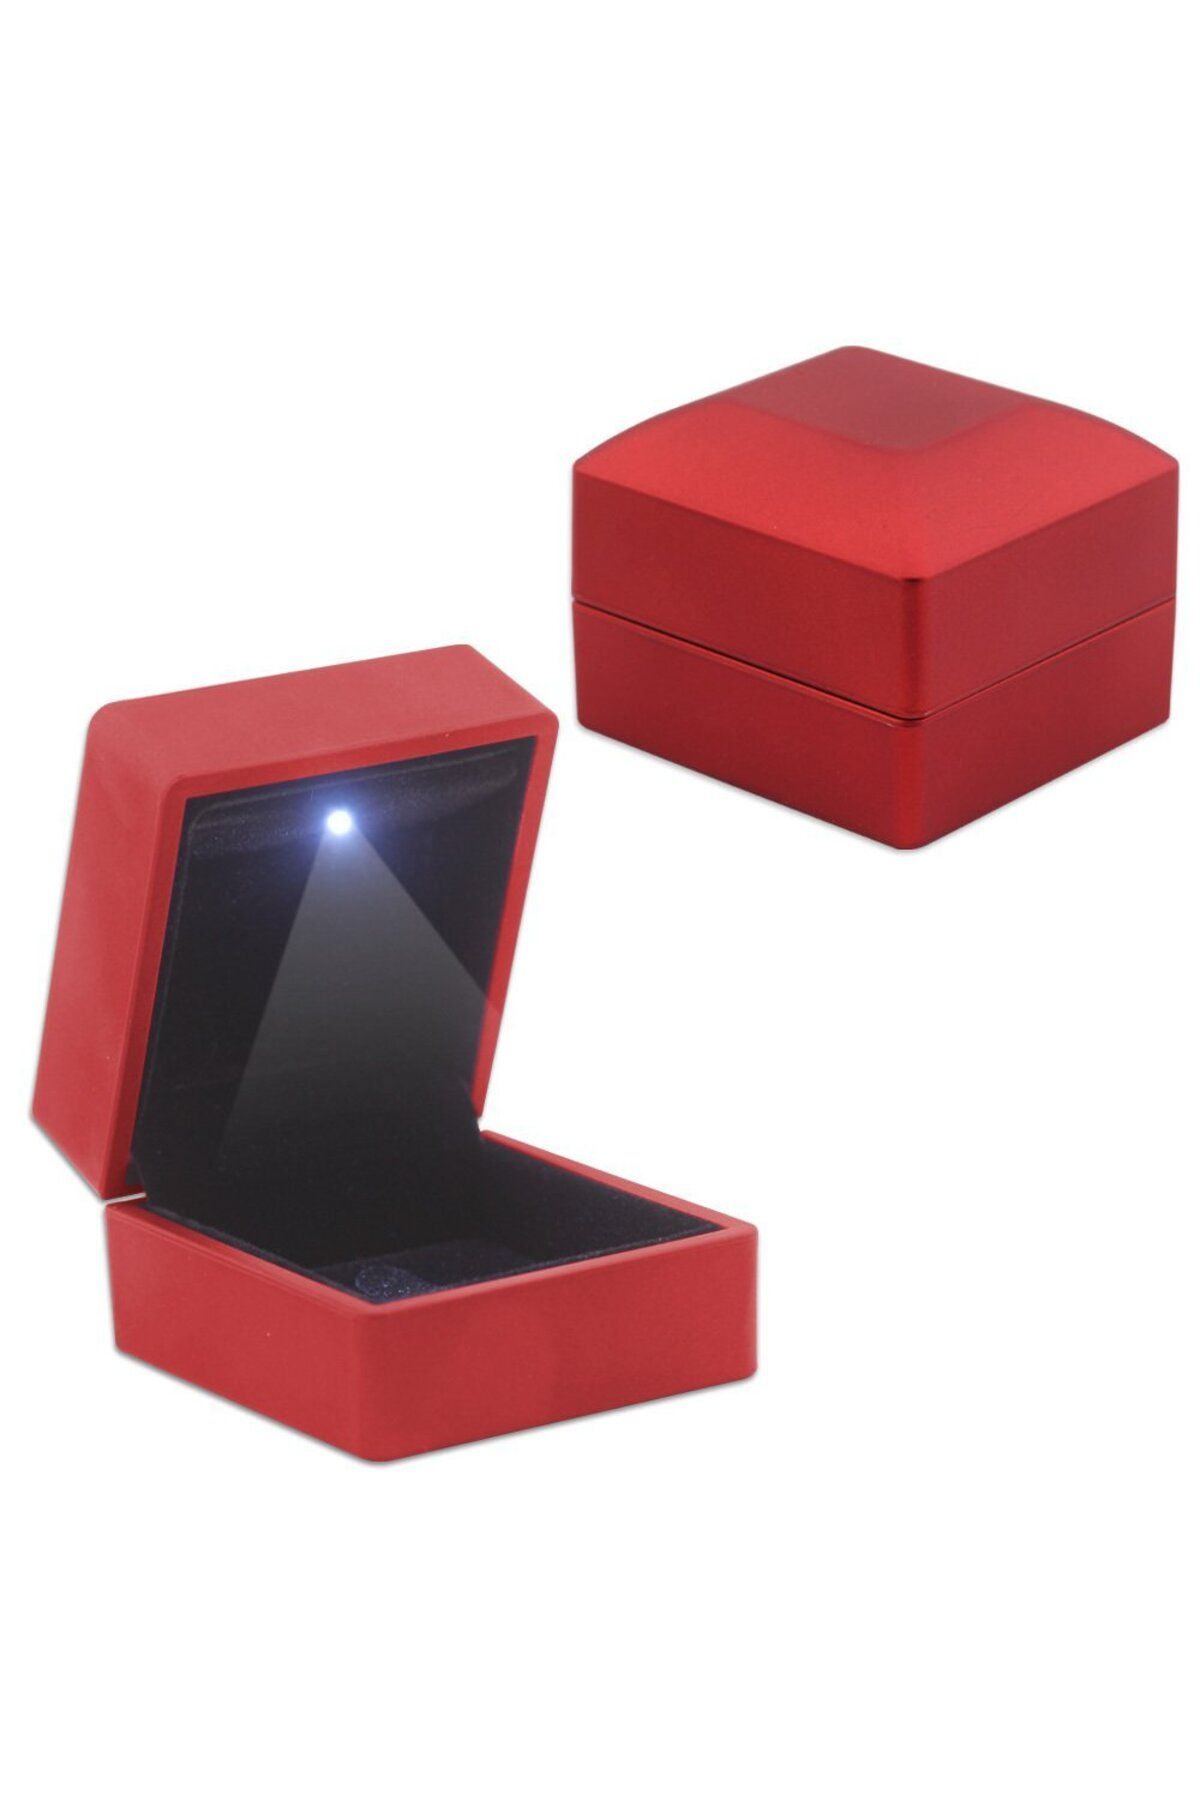 Tesbihane Işıklı Yüzük/Alyans Kutusu (Model-1) 110000020